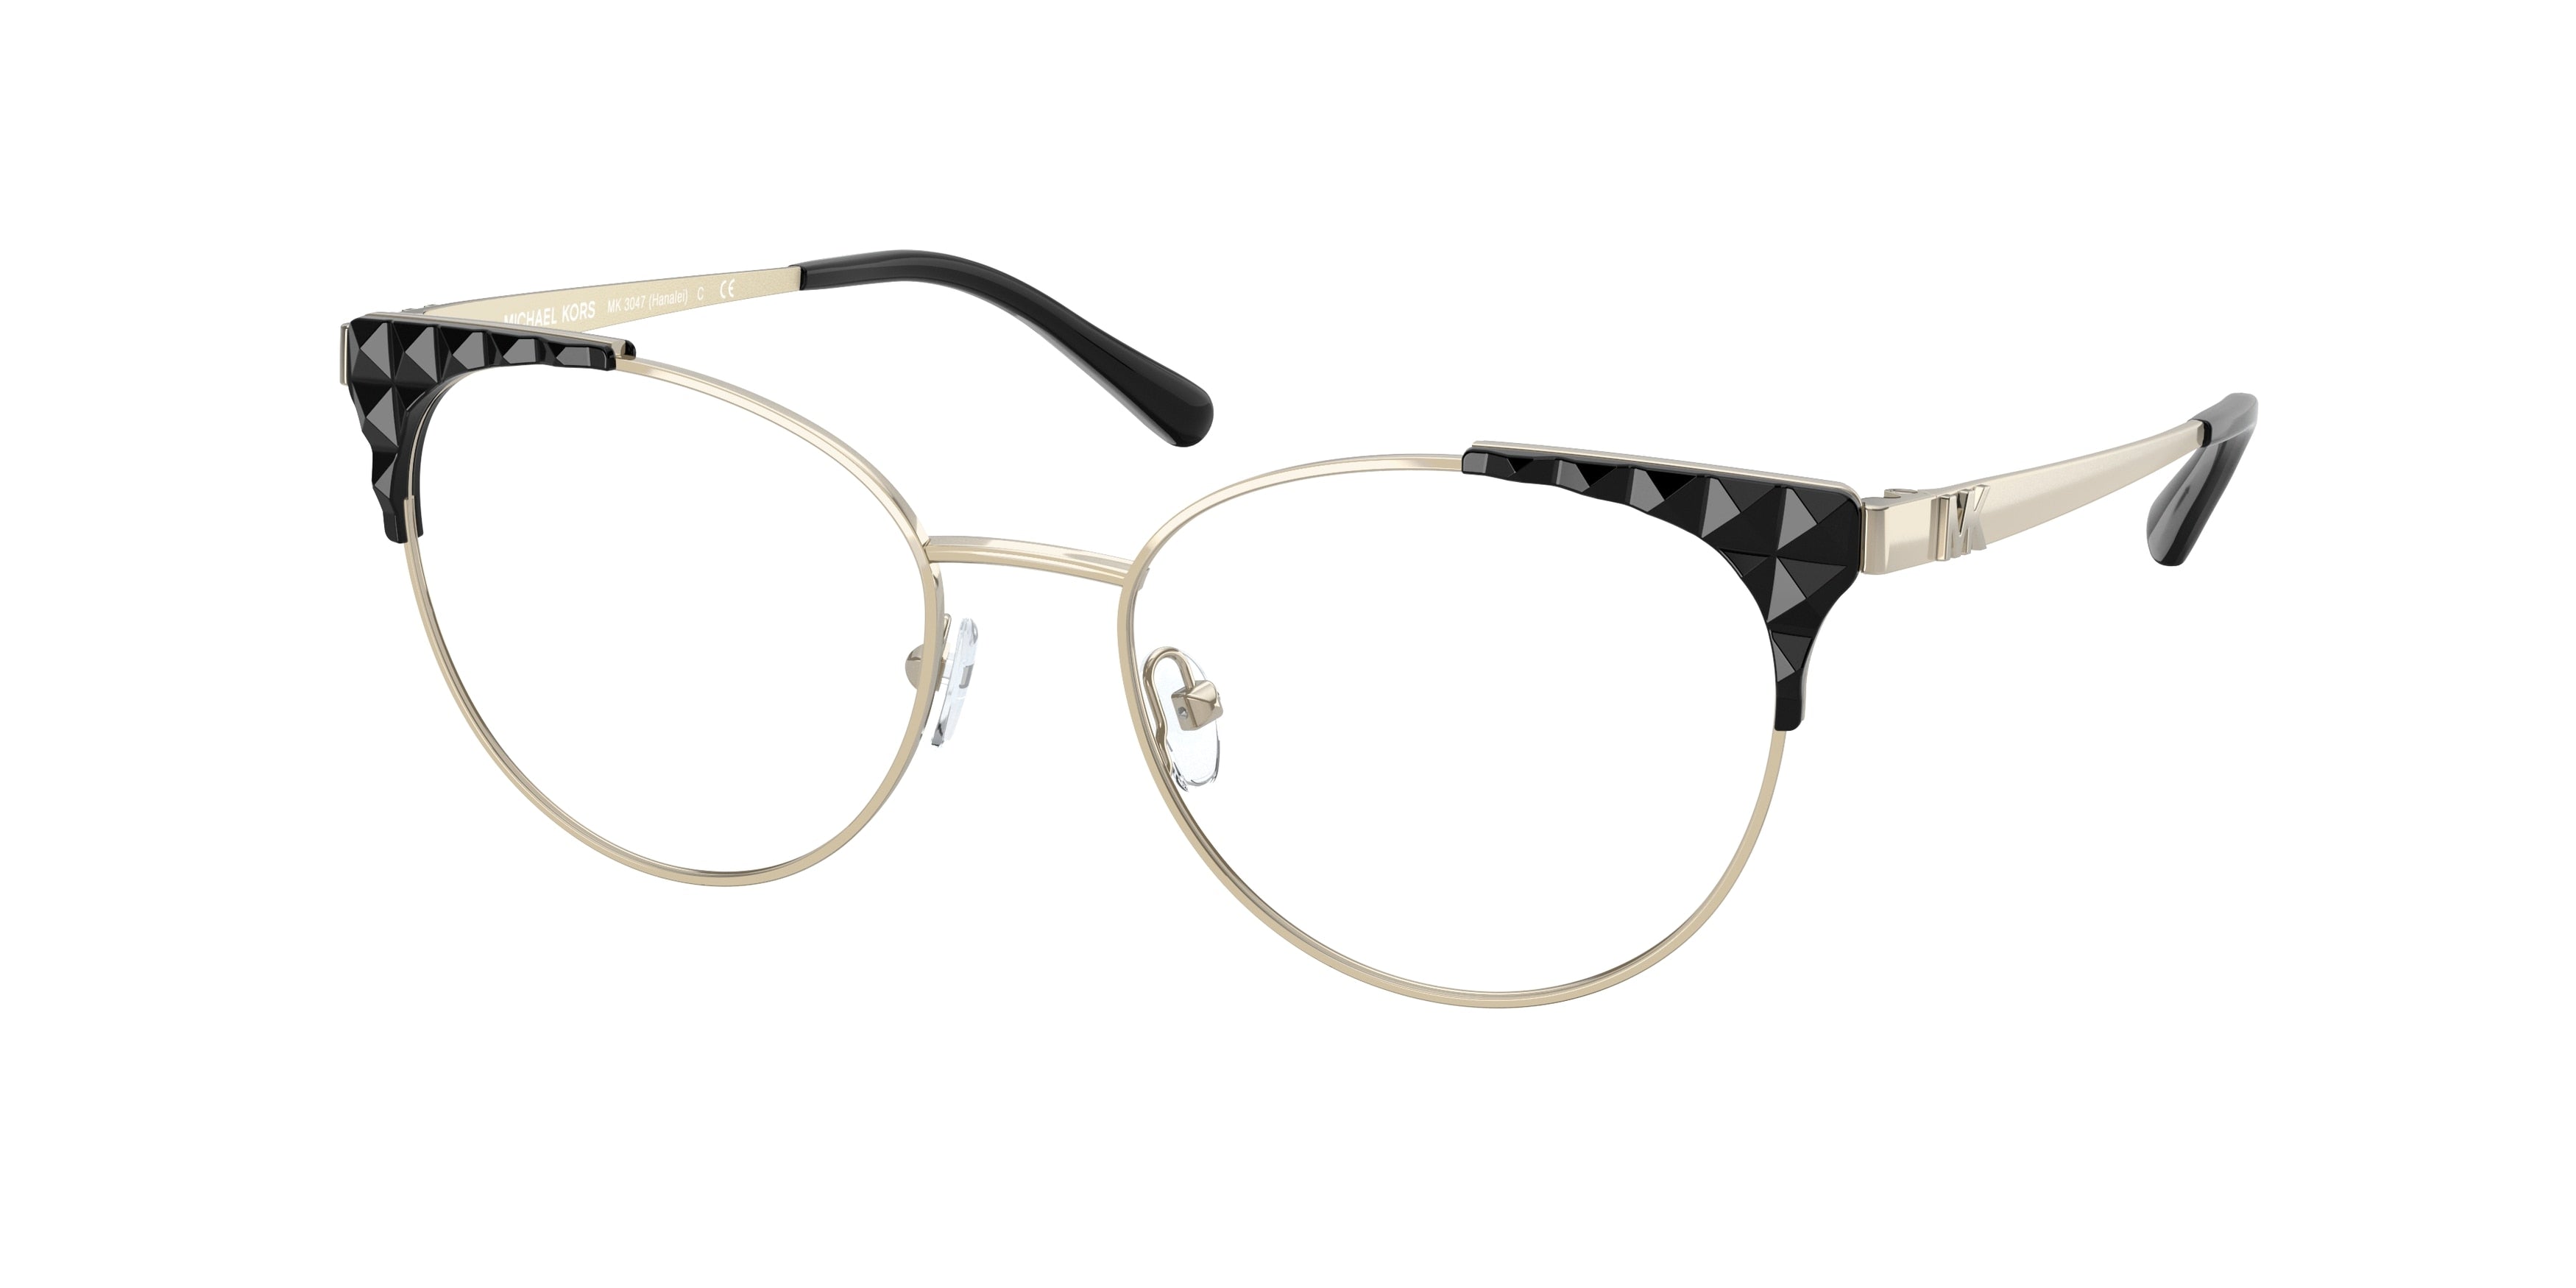 Michael Kors HANALEI MK3047 Cat Eye Eyeglasses  1014-Light Gold 52-140-17 - Color Map Gold